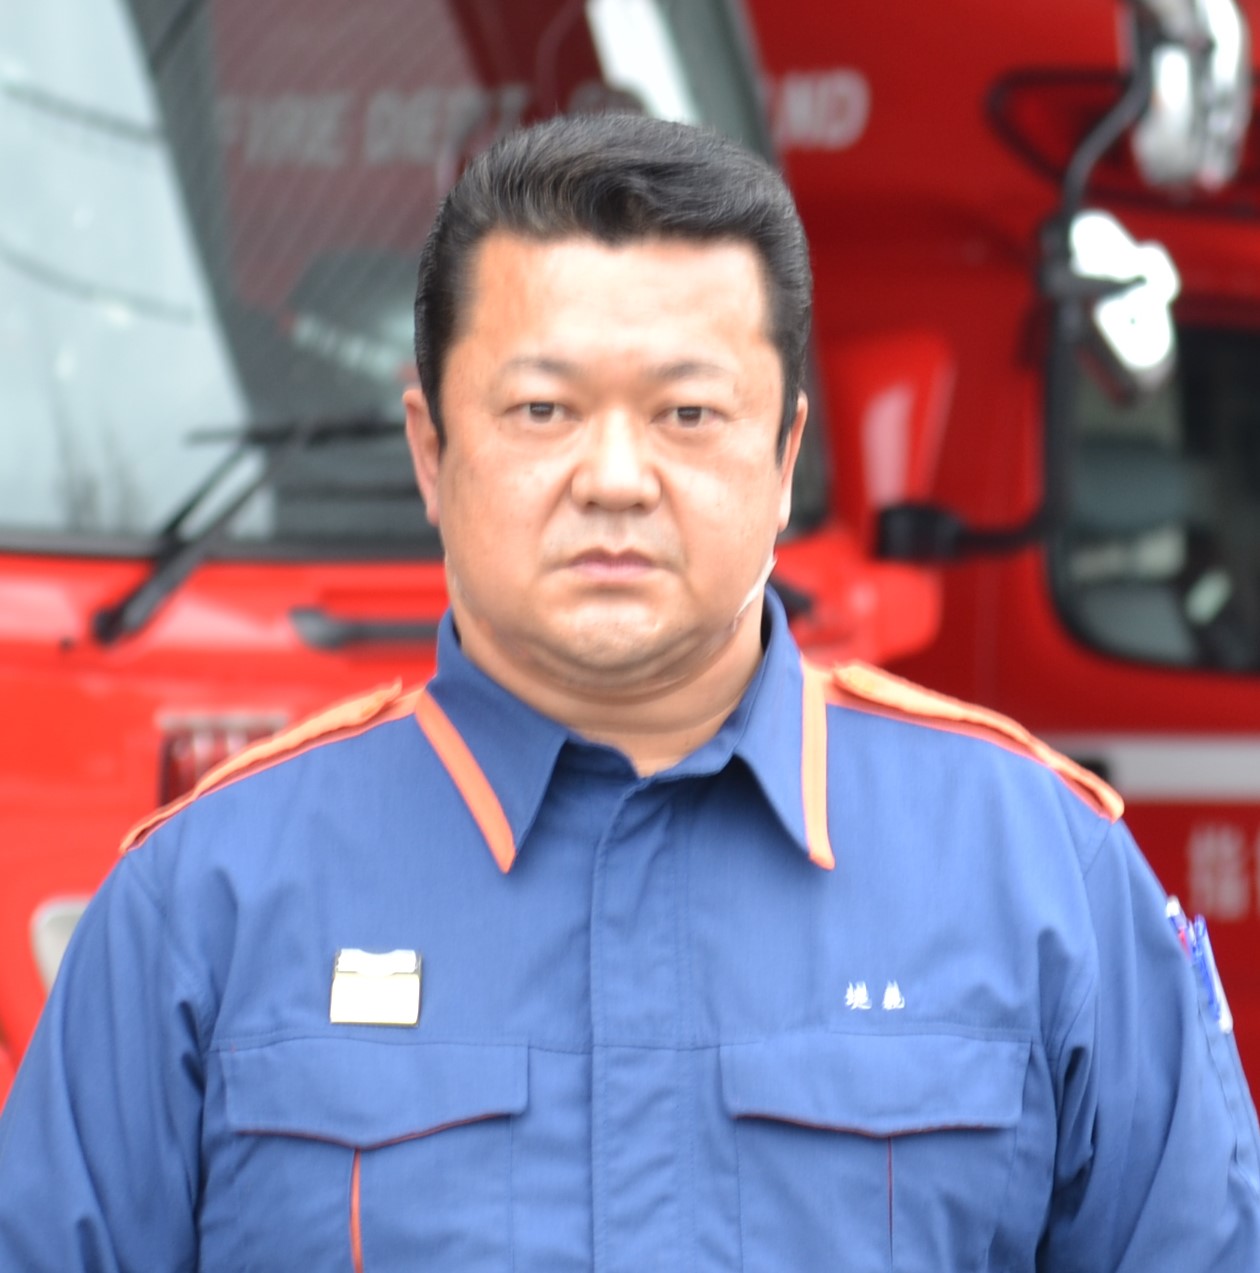 堤義弘消防本部、総務課長の写真